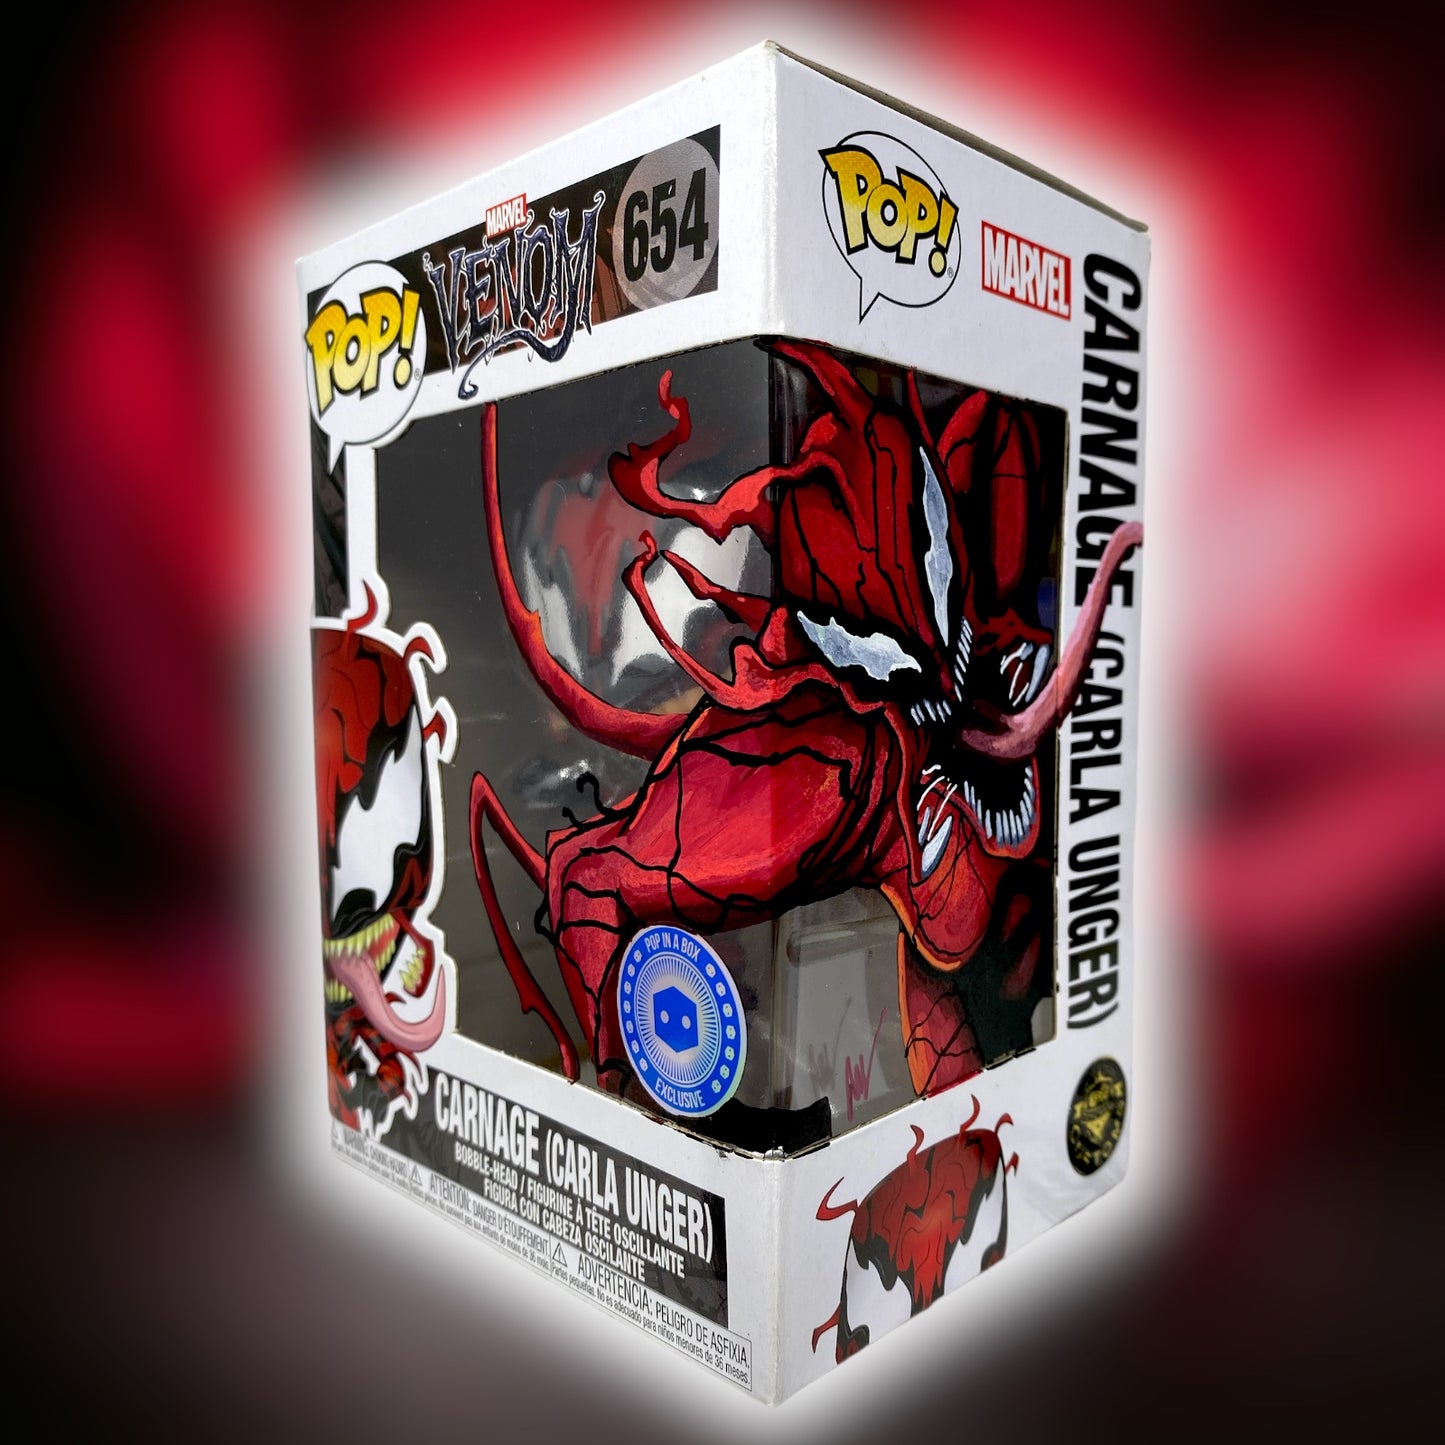 Marvel - Carnage (Carla Unger) 654 Pop in a Box, TCC X “Mooch” Custom